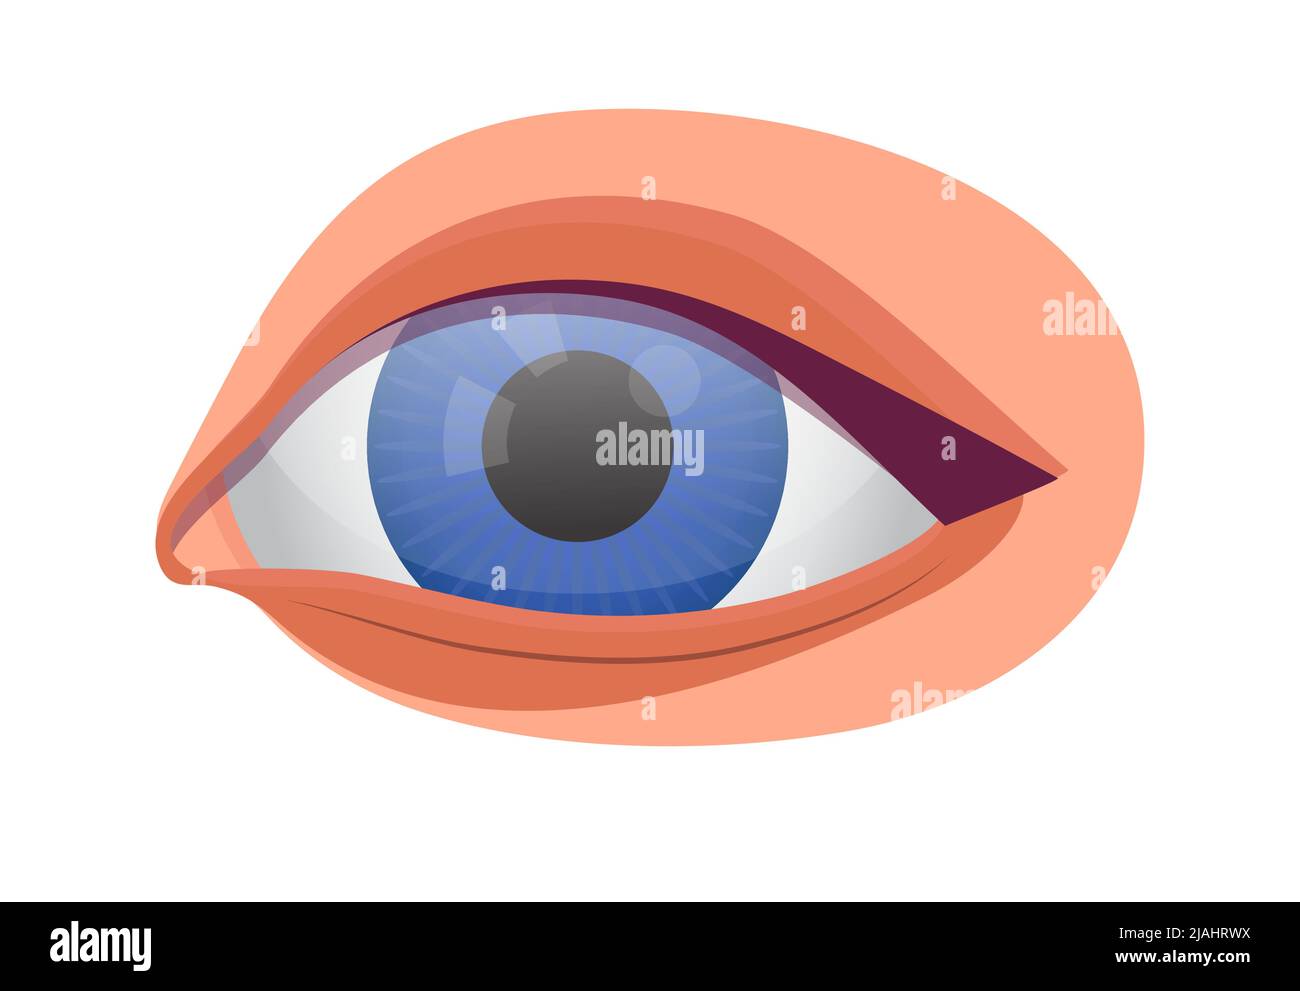 Symbolvektor für das menschliche Auge für medizinische Anwendungen, Web und Blogs. Überprüfen Sie die Abbildung für das Sehvermögen. Optiker, Augenheilkunde Problem und Krankheit. Myopie, Glaukom t Stock Vektor